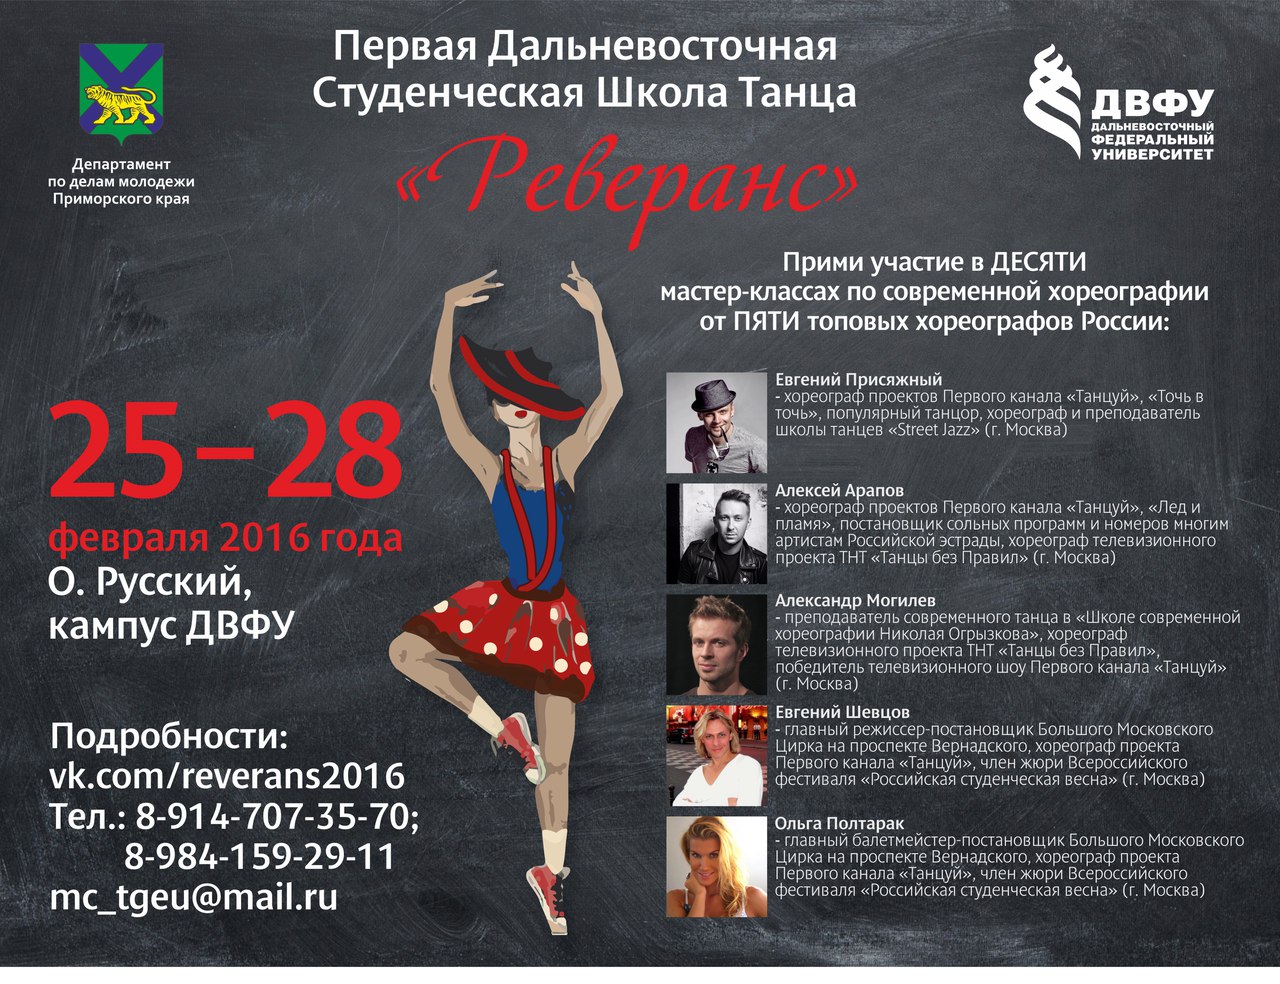 Топовые хореографы России обучат приморцев танцам